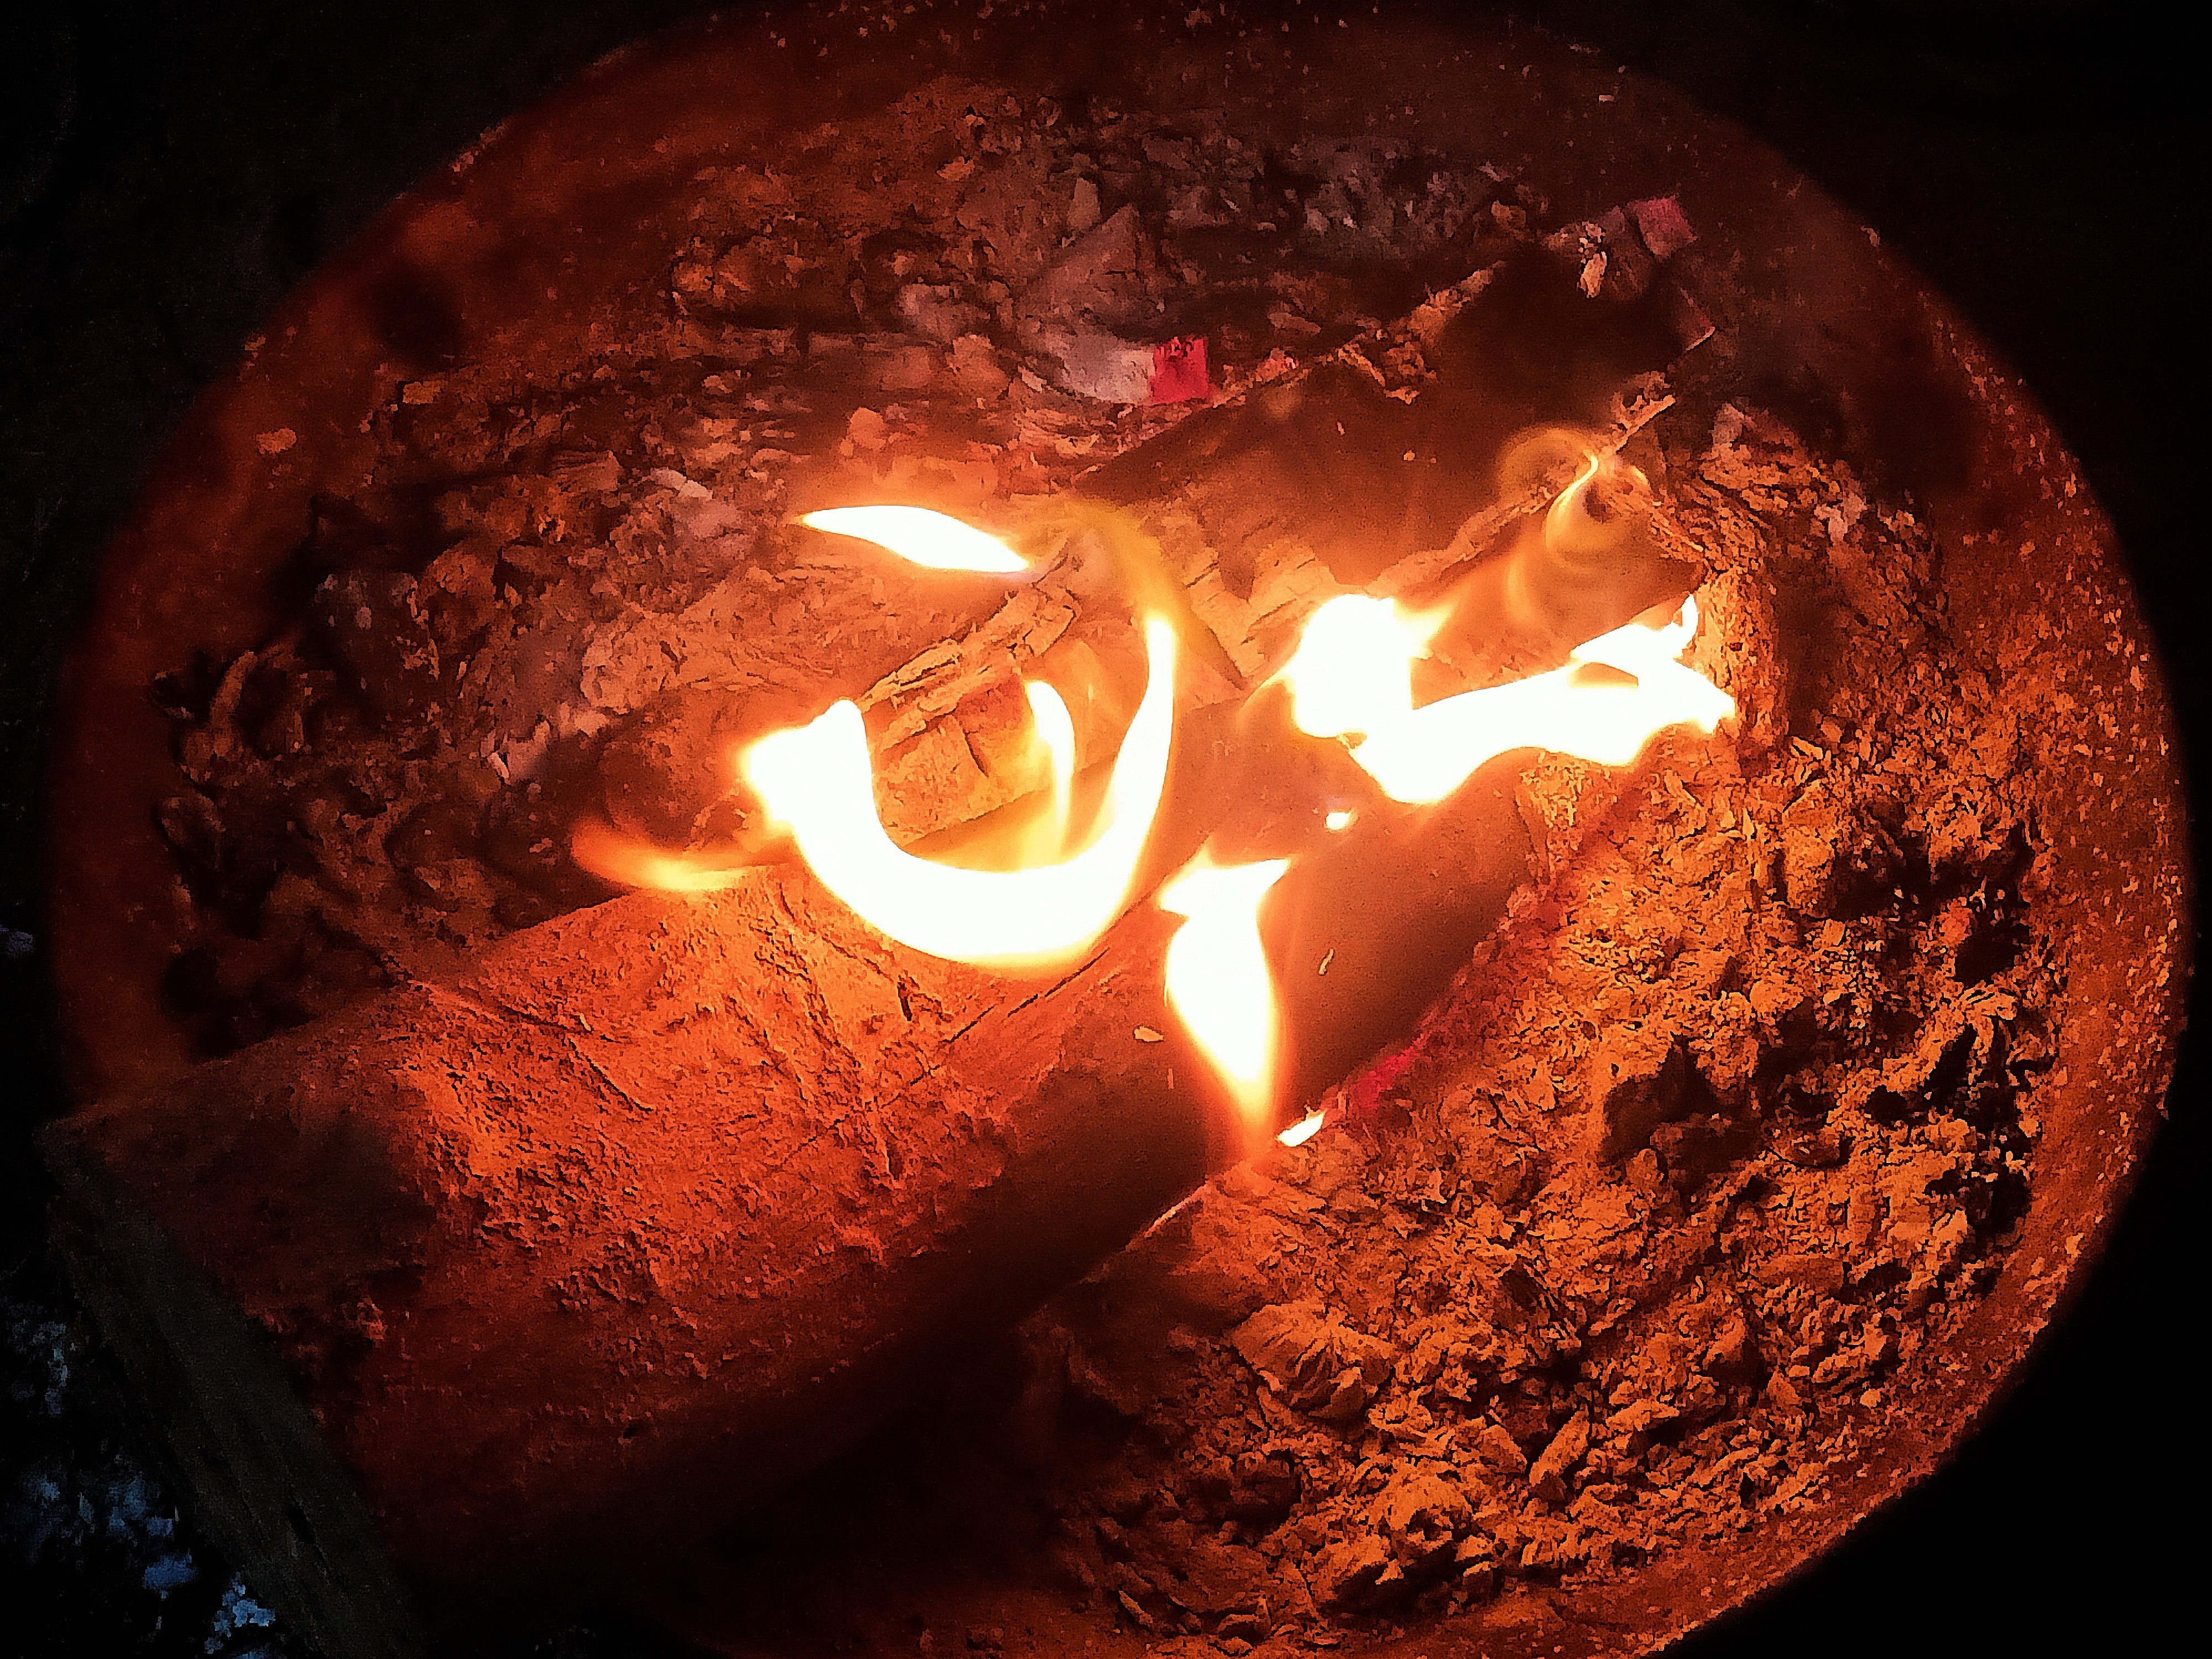 ज़िगर की आग's image